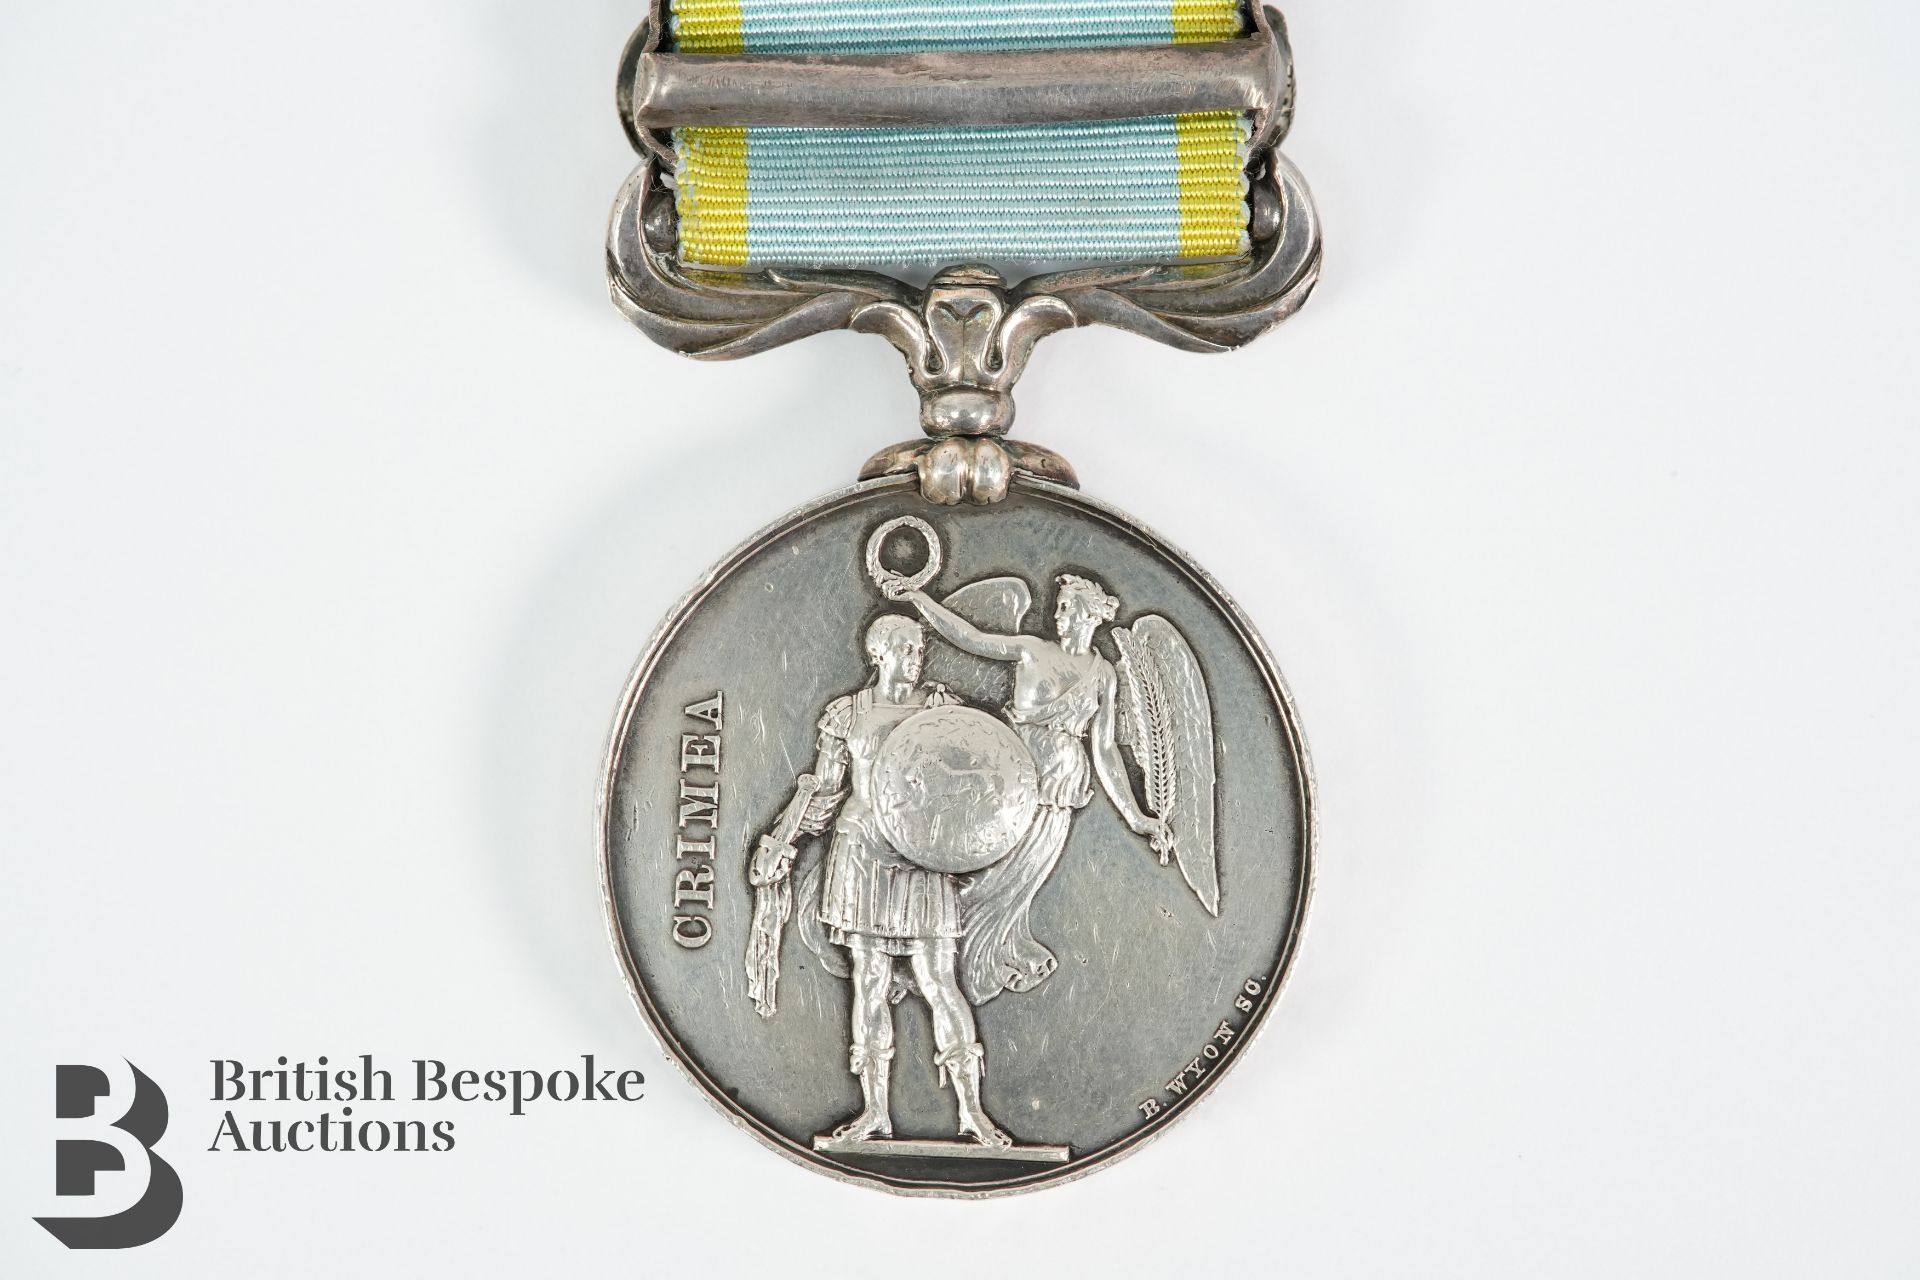 Crimea Campaign Medal - Image 3 of 3